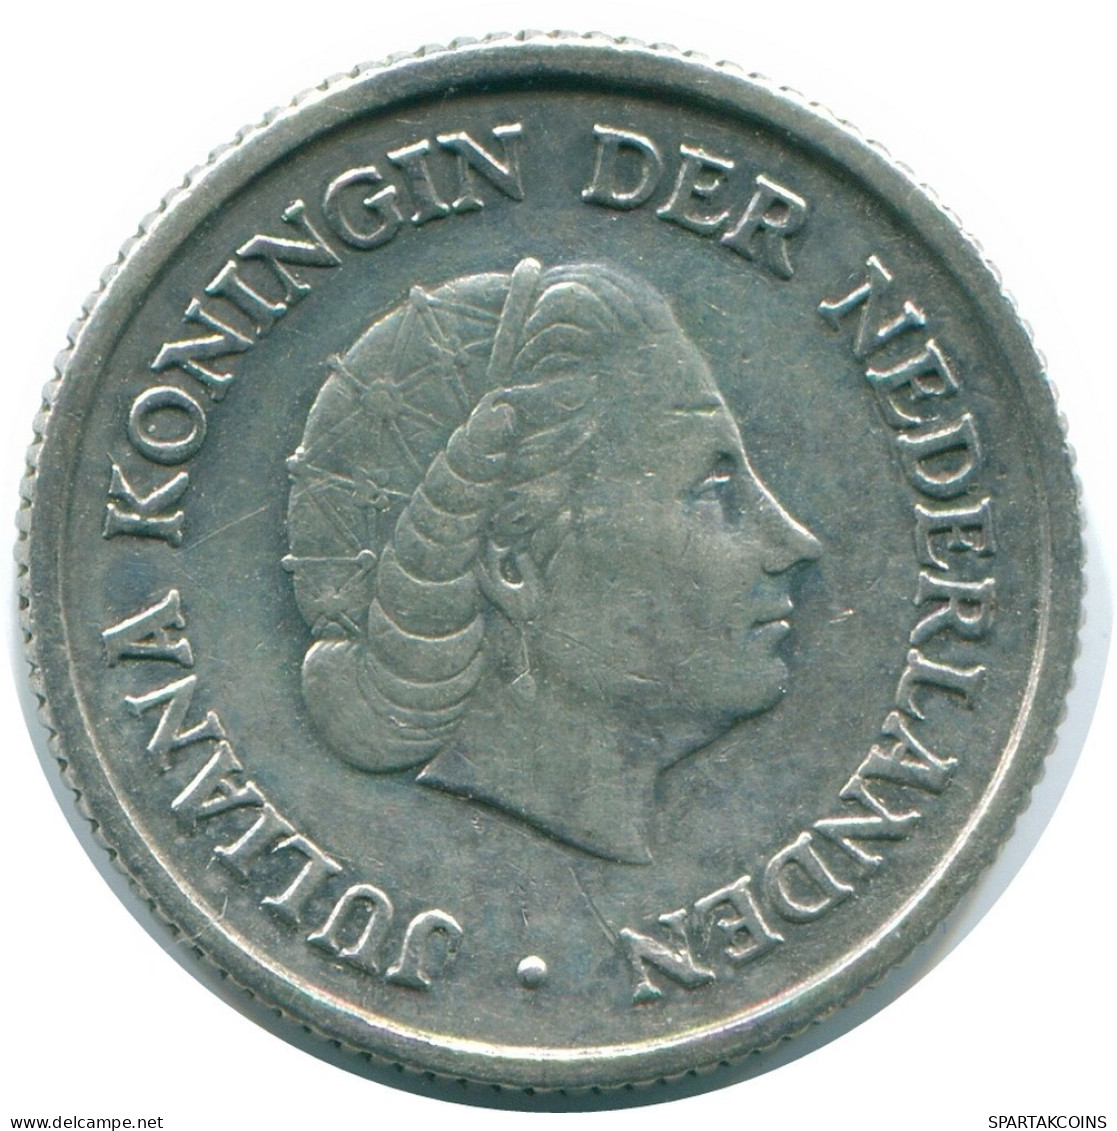 1/4 GULDEN 1957 NIEDERLÄNDISCHE ANTILLEN SILBER Koloniale Münze #NL10975.4.D.A - Antille Olandesi